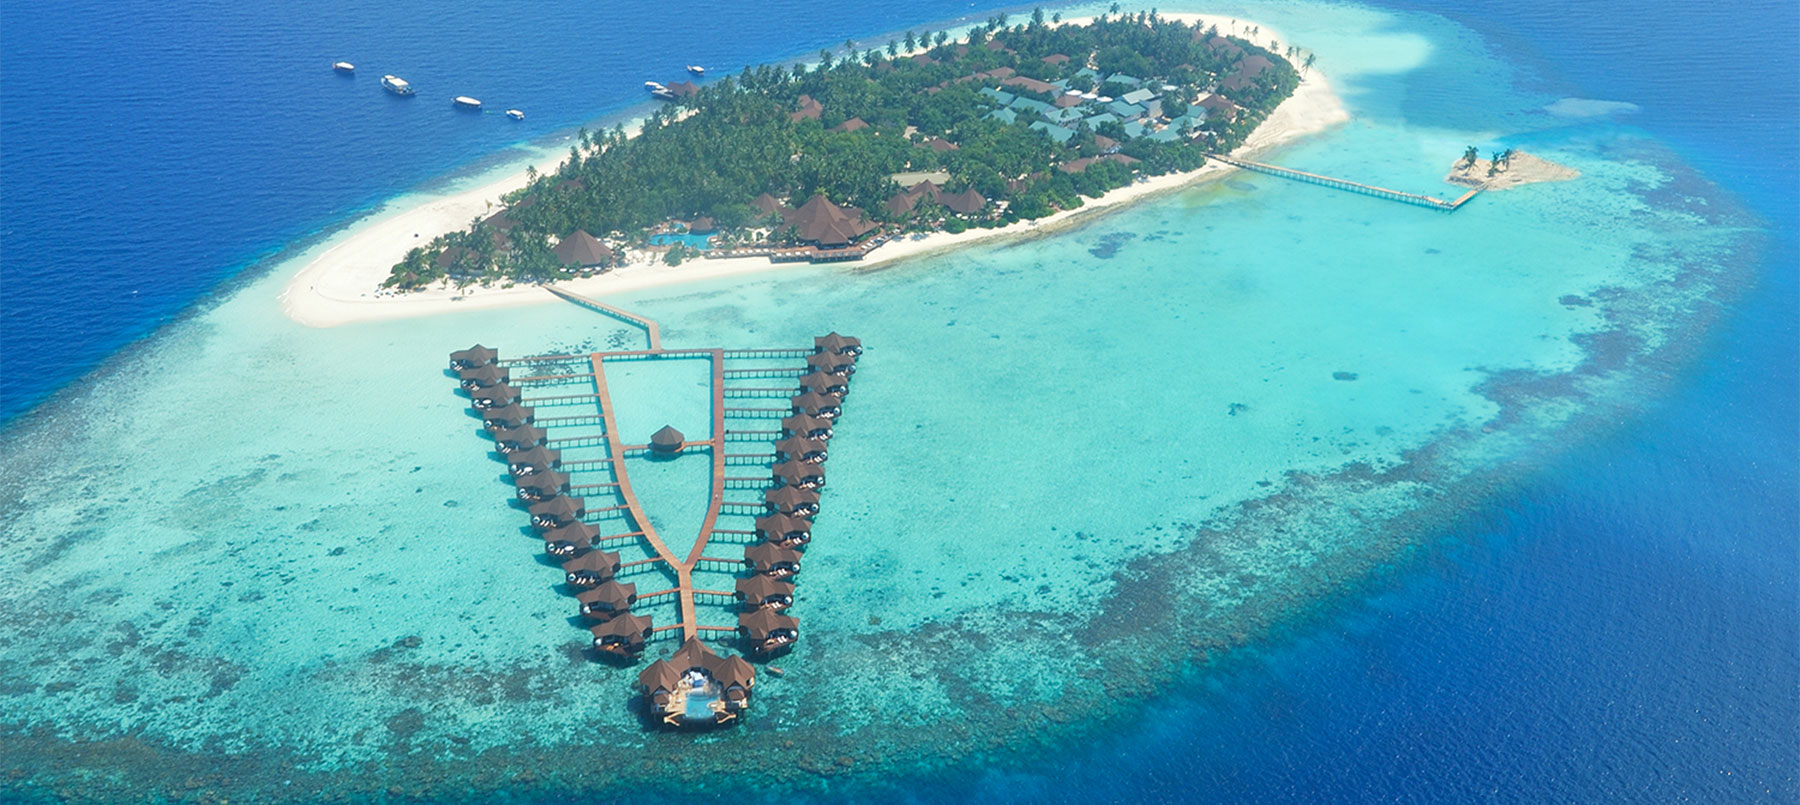 马尔代夫鲁滨逊俱乐部<br/>Robinson Club Maldives